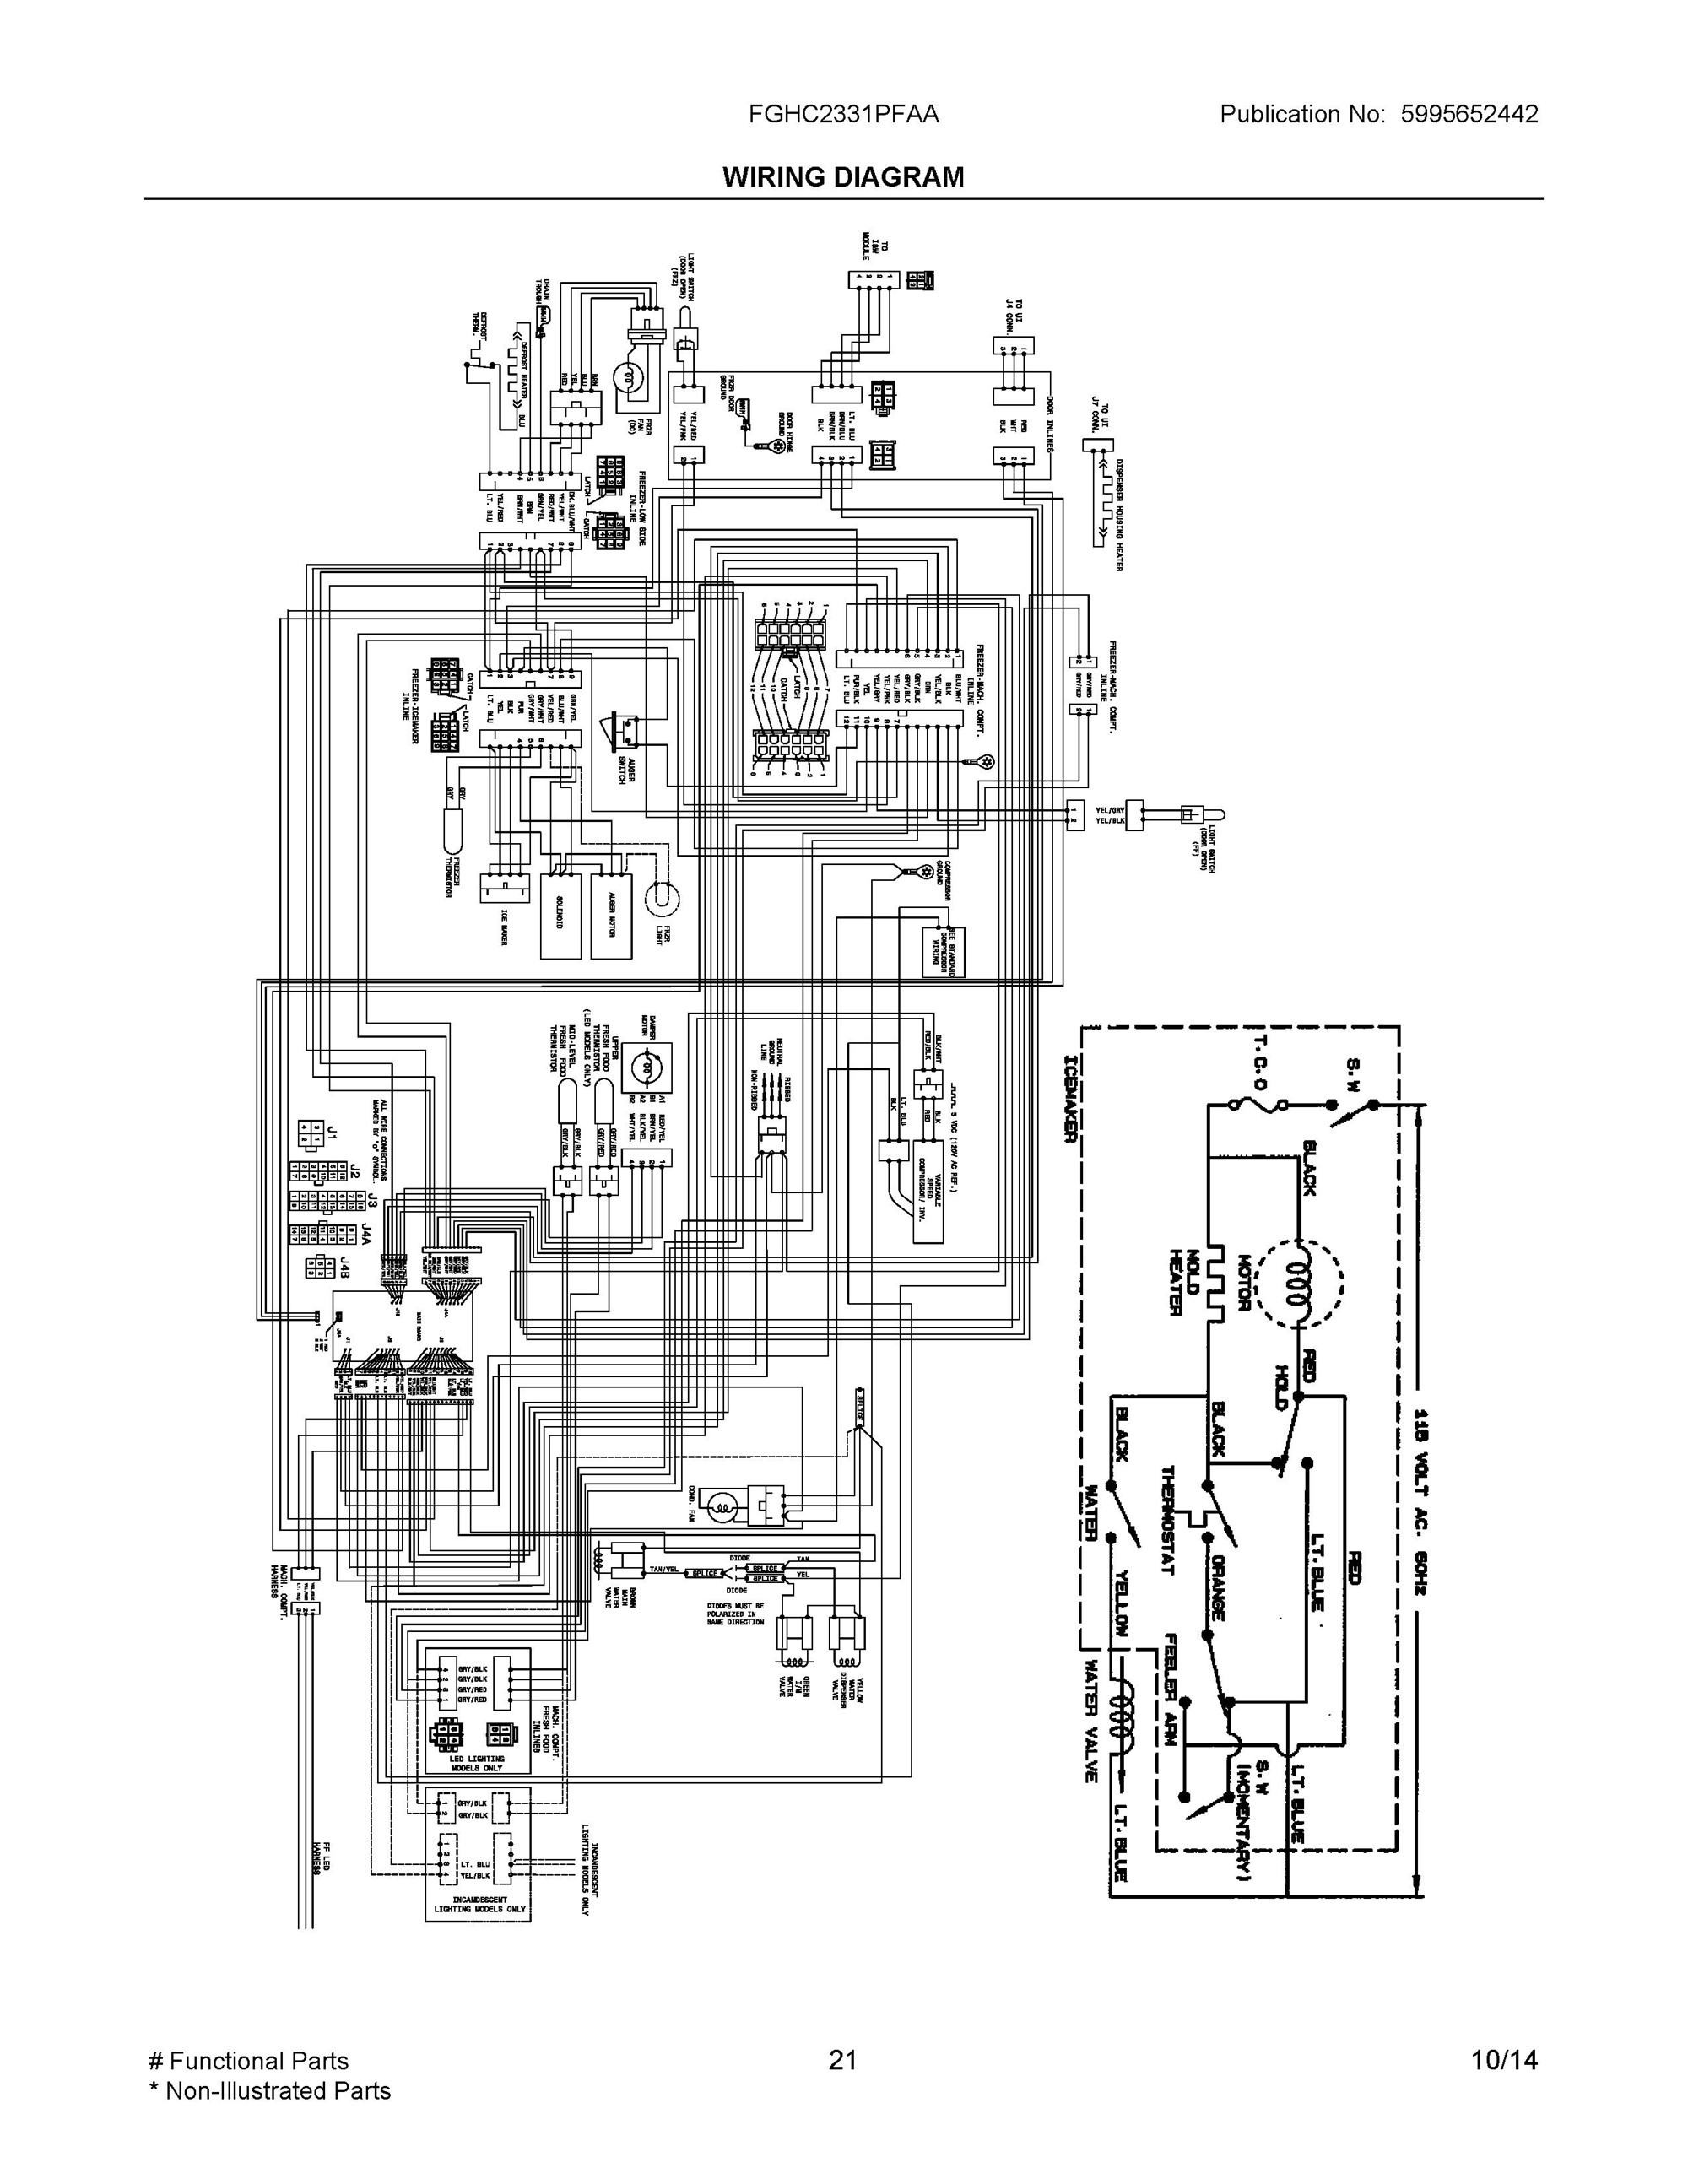 Mefi 4 wiring diagram